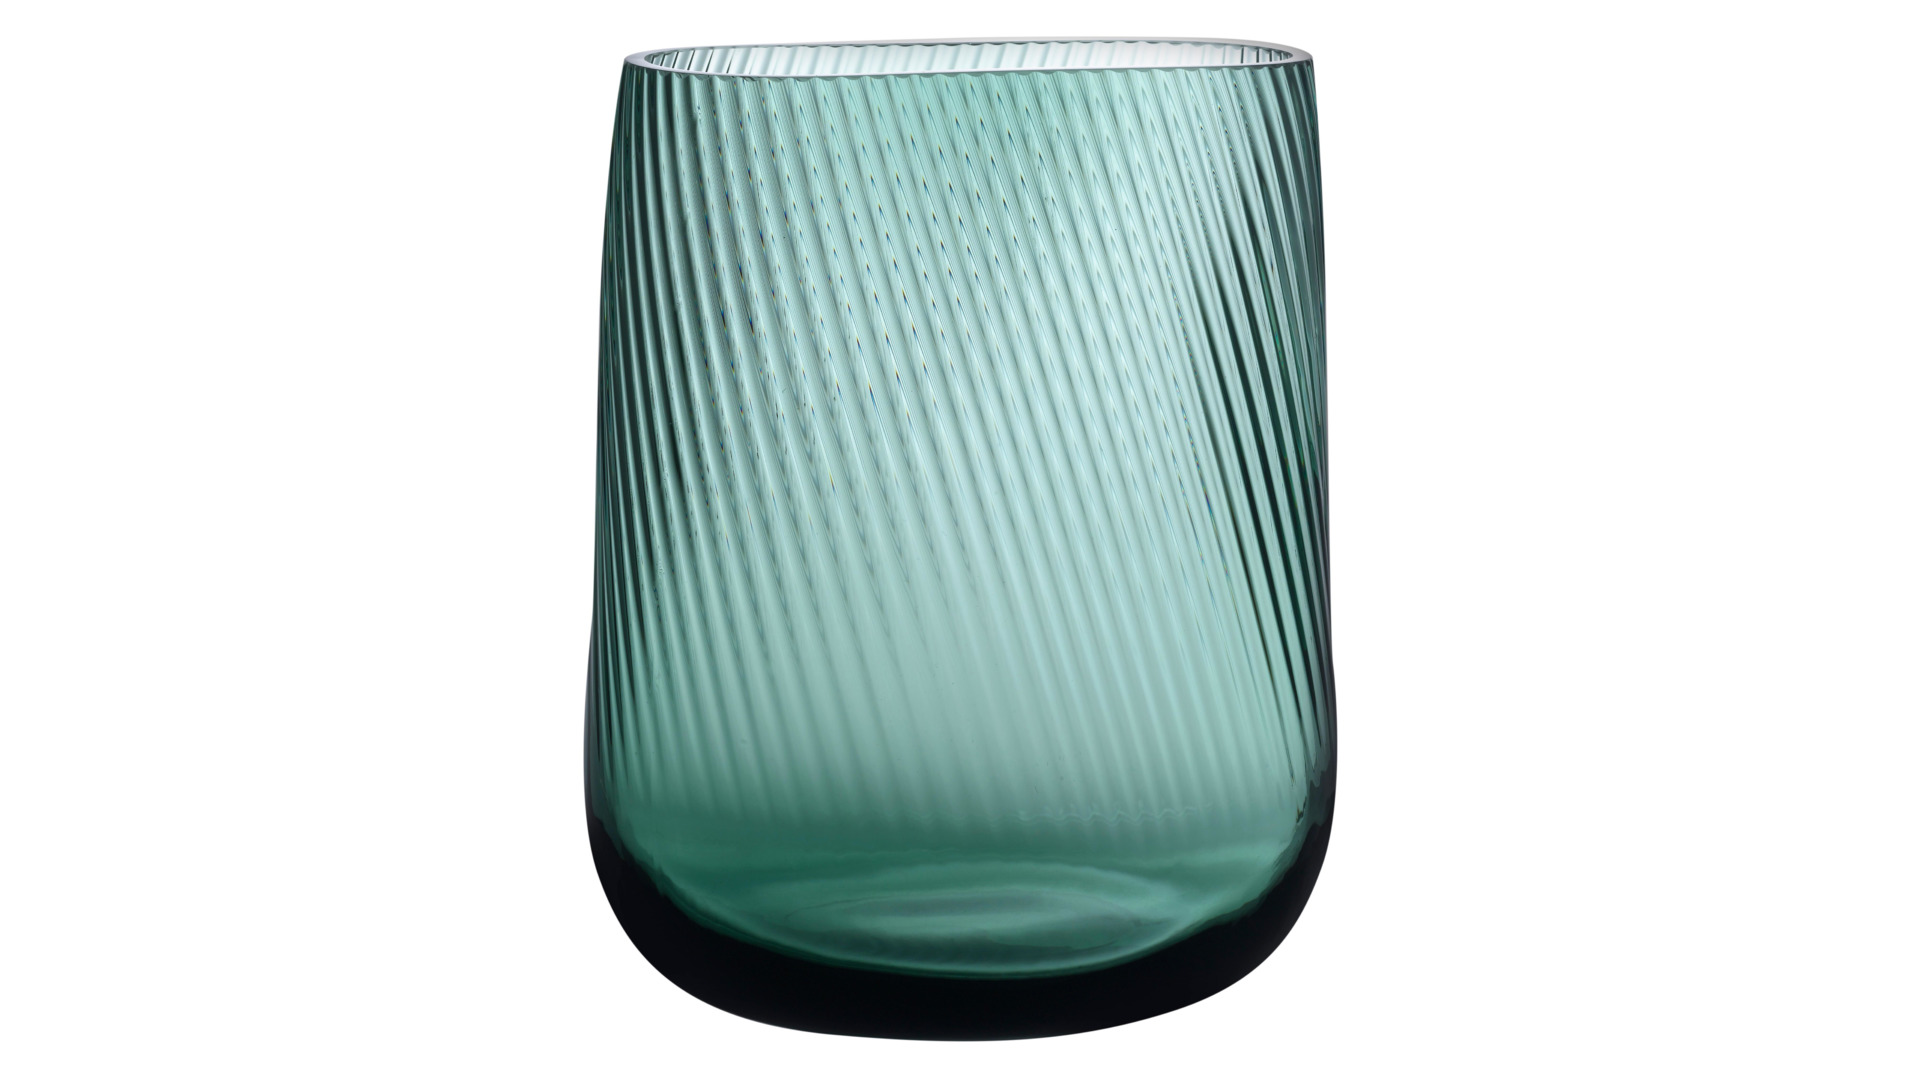 Ваза прямоугольная Nude Glass Опти 24х20 см, стекло хрустальное, зеленая